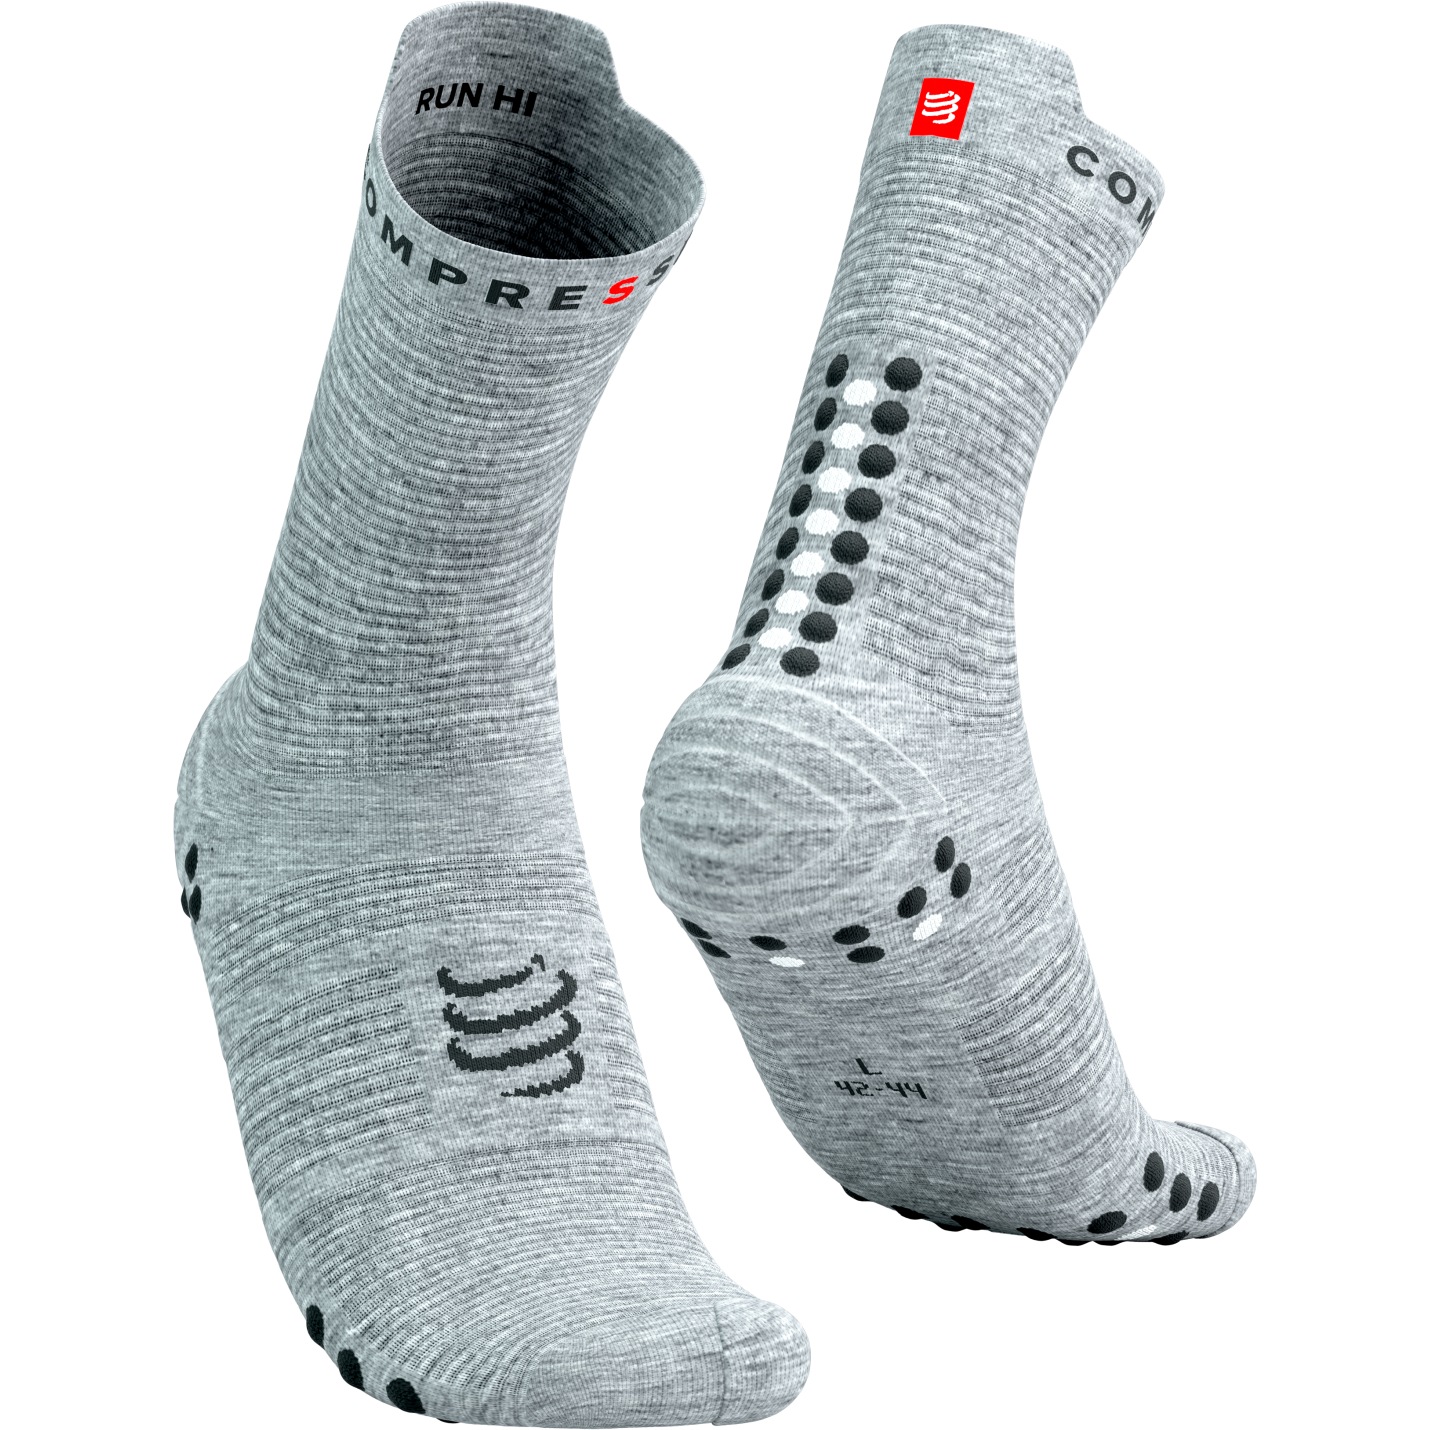 Picture of Compressport Pro Racing Compression Socks v4.0 Run High - grey melange/black